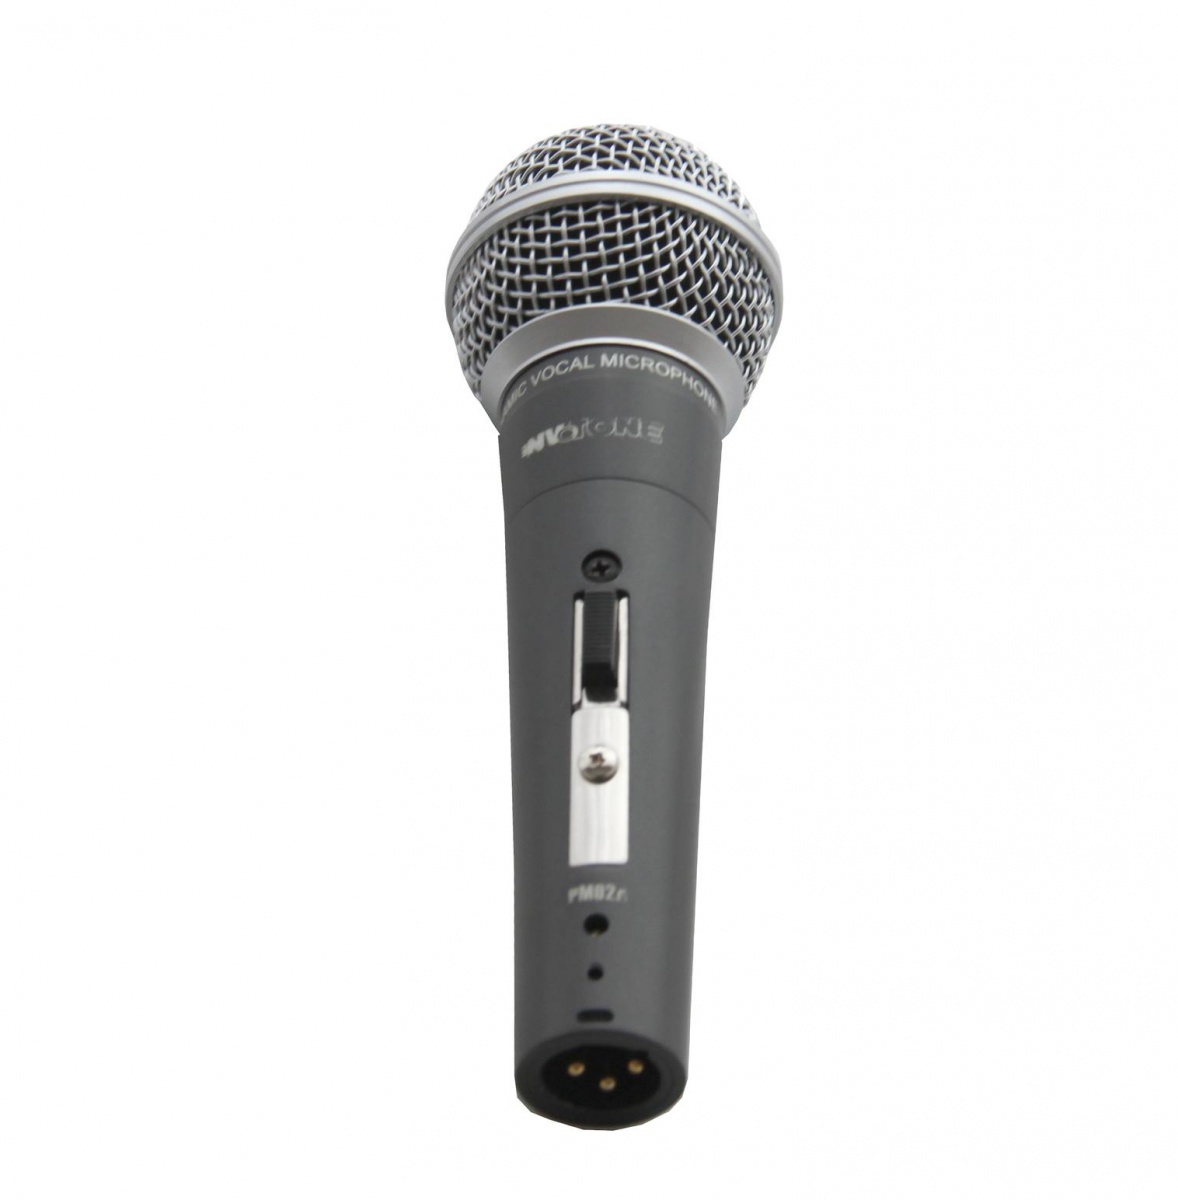 INVOTONE PM02A - микрофон вокальный динамический, гиперкард. 50Гц-15кГц,600 Ом, выключ.,чехол, держ. купить в prostore.me